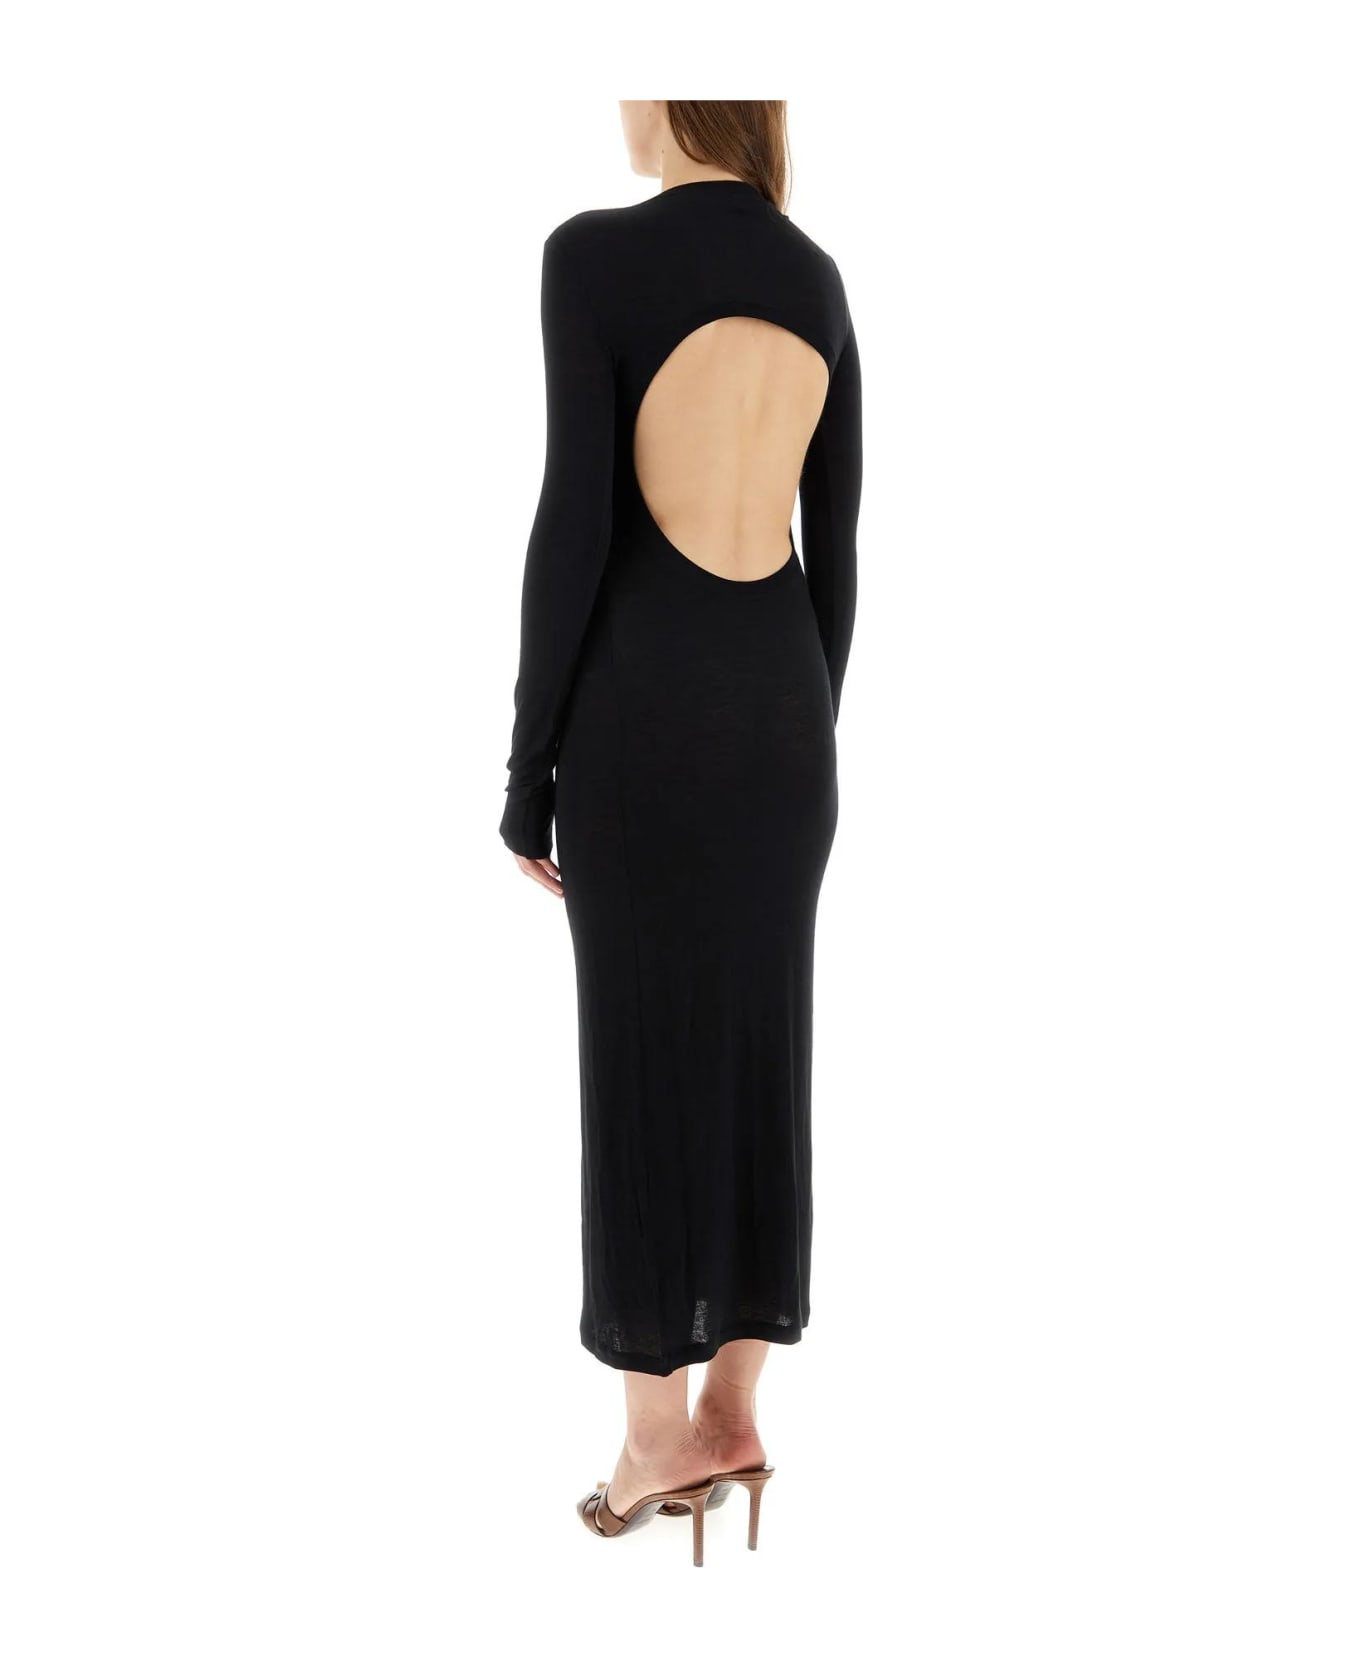 Saint Laurent Black Viscose Blend Dress - NOIR